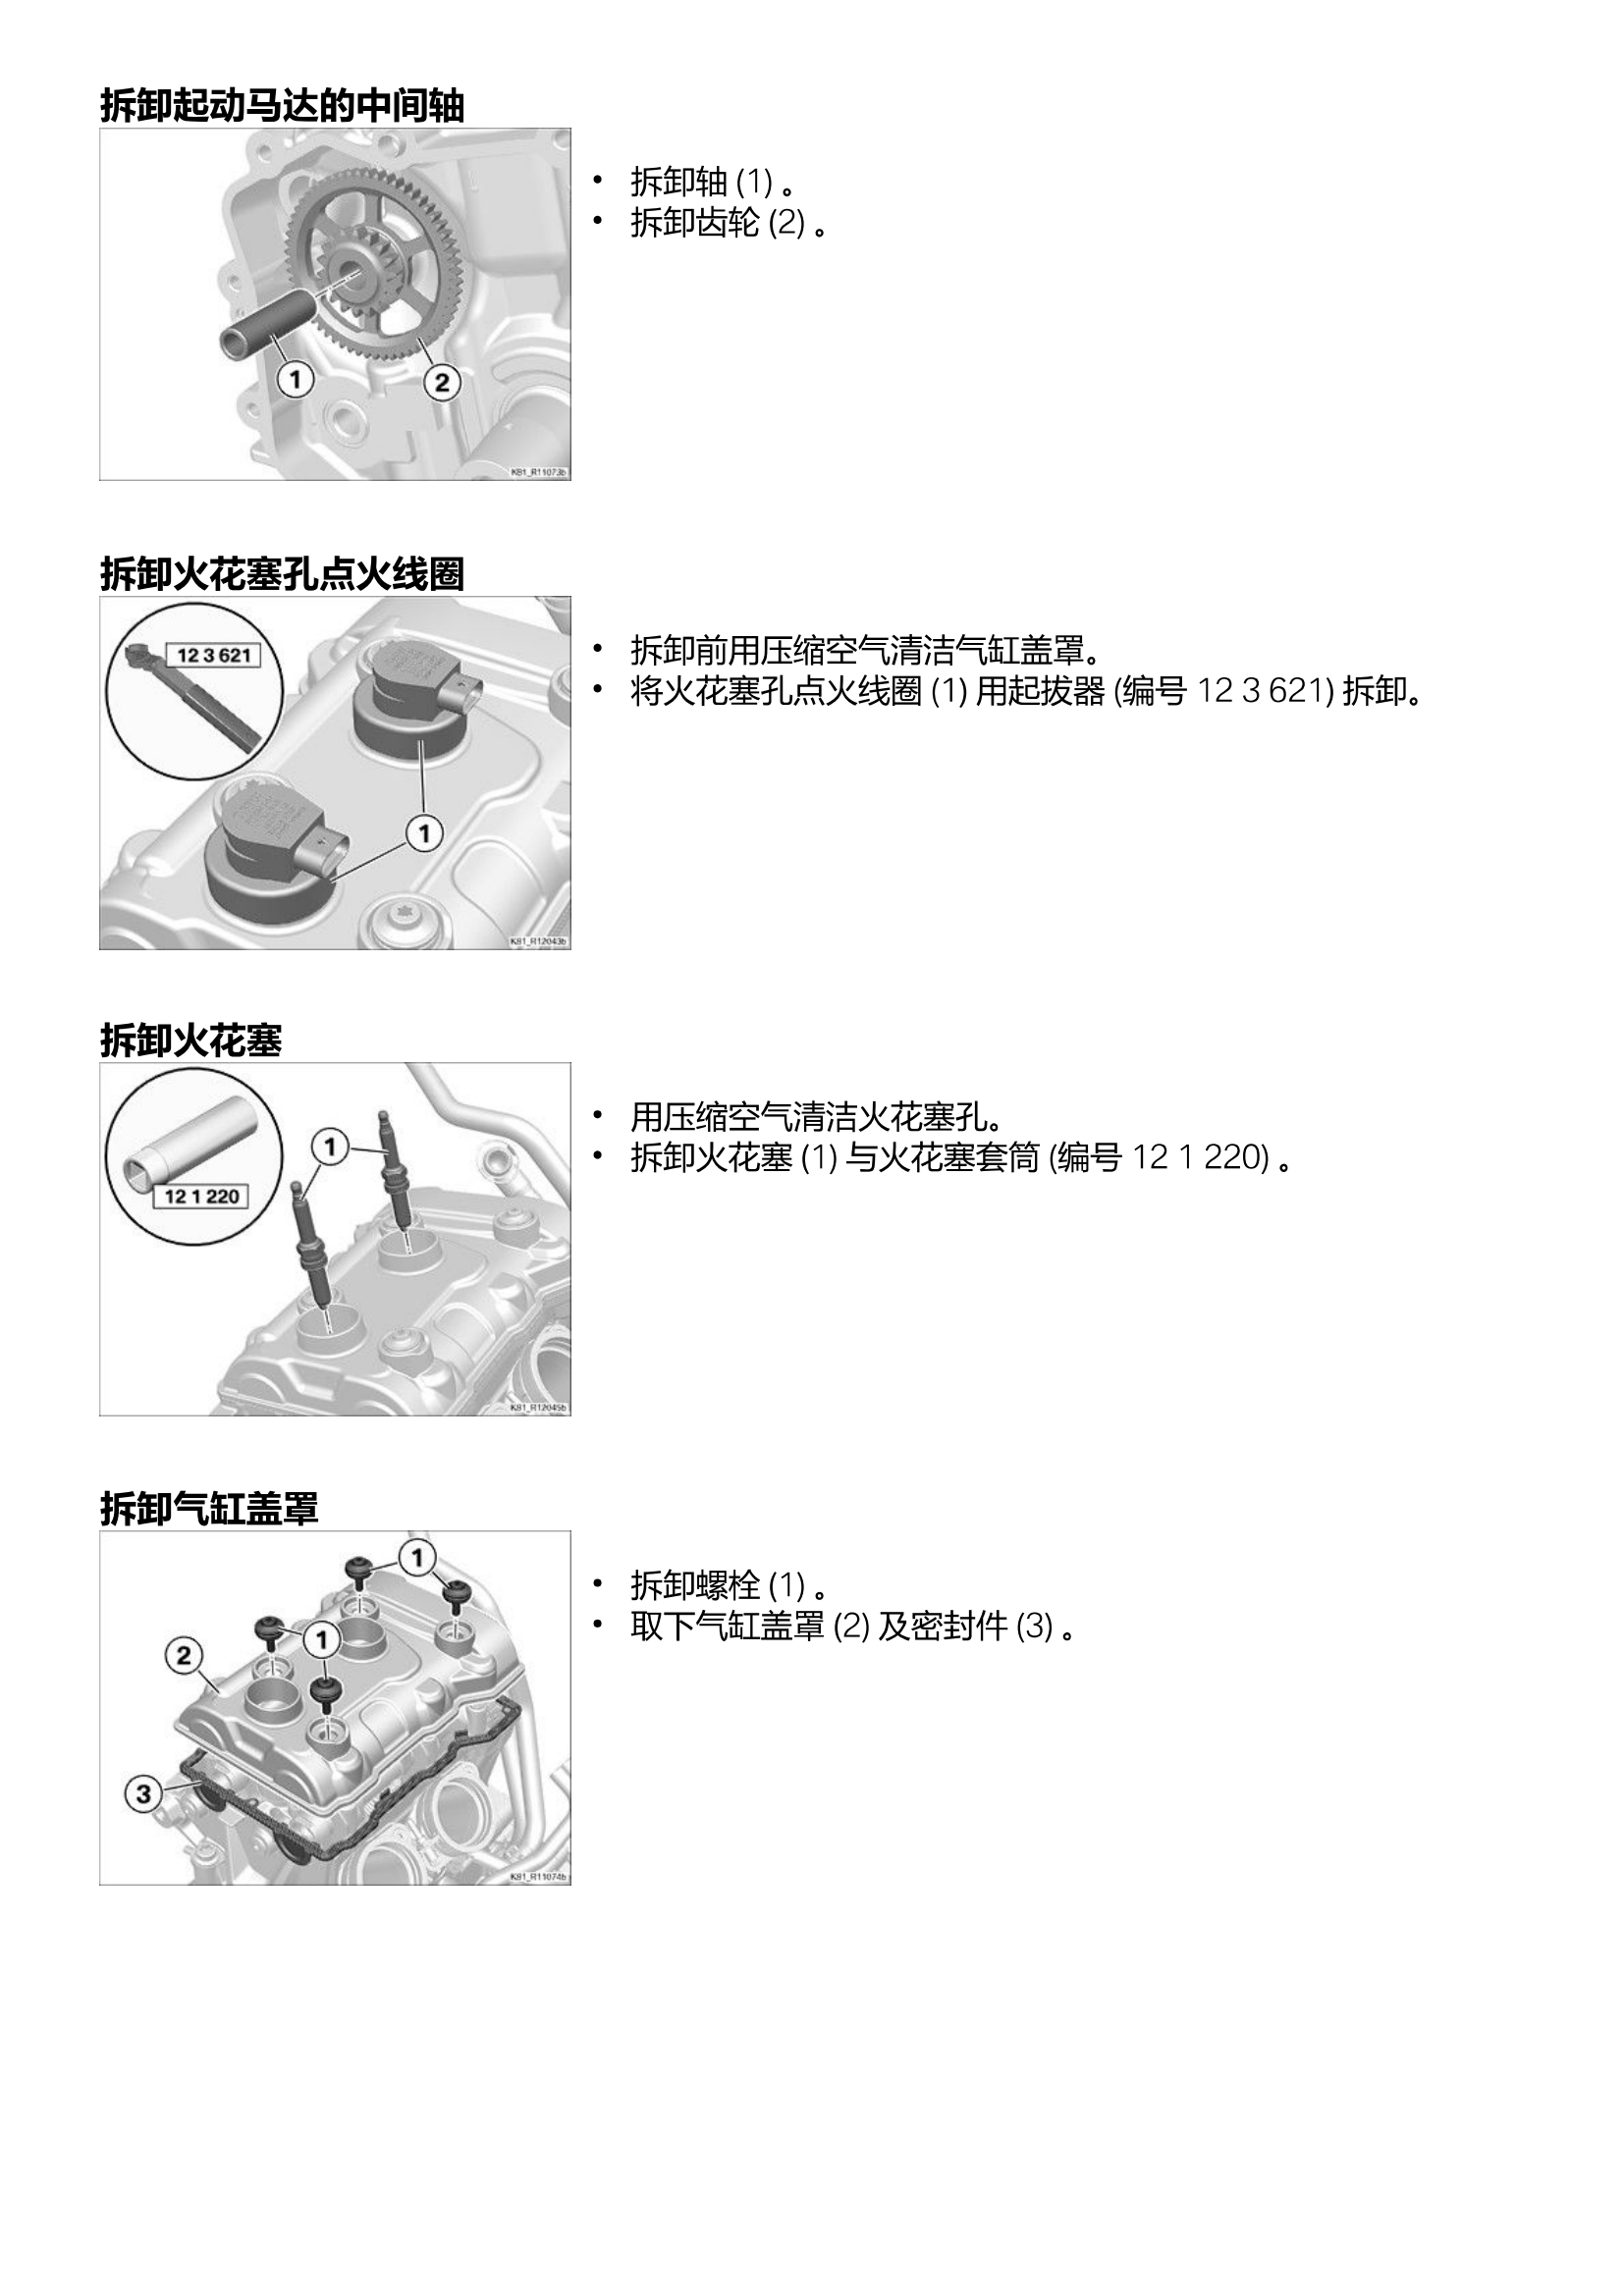 原版中文21-24年宝马f900xr f900r发动机维修手册插图3